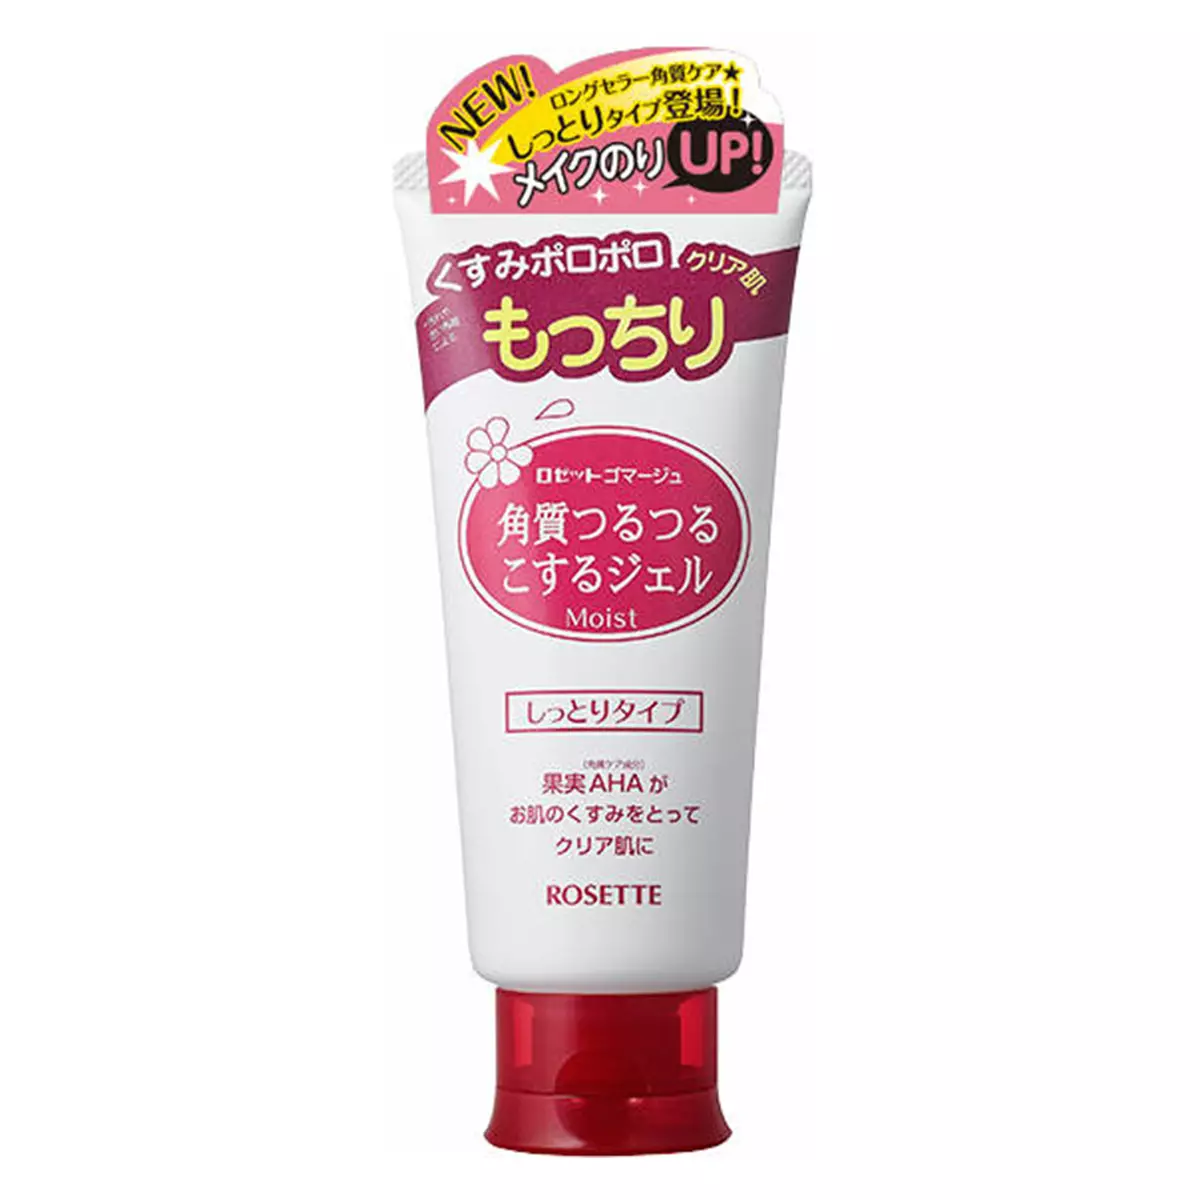 Japoniako kosmetika: Japoniako kosmetika marka onenak. Rosette, Kose eta beste kosmetika profesionalak. Kosmetologoen berrikuspenak 4498_23